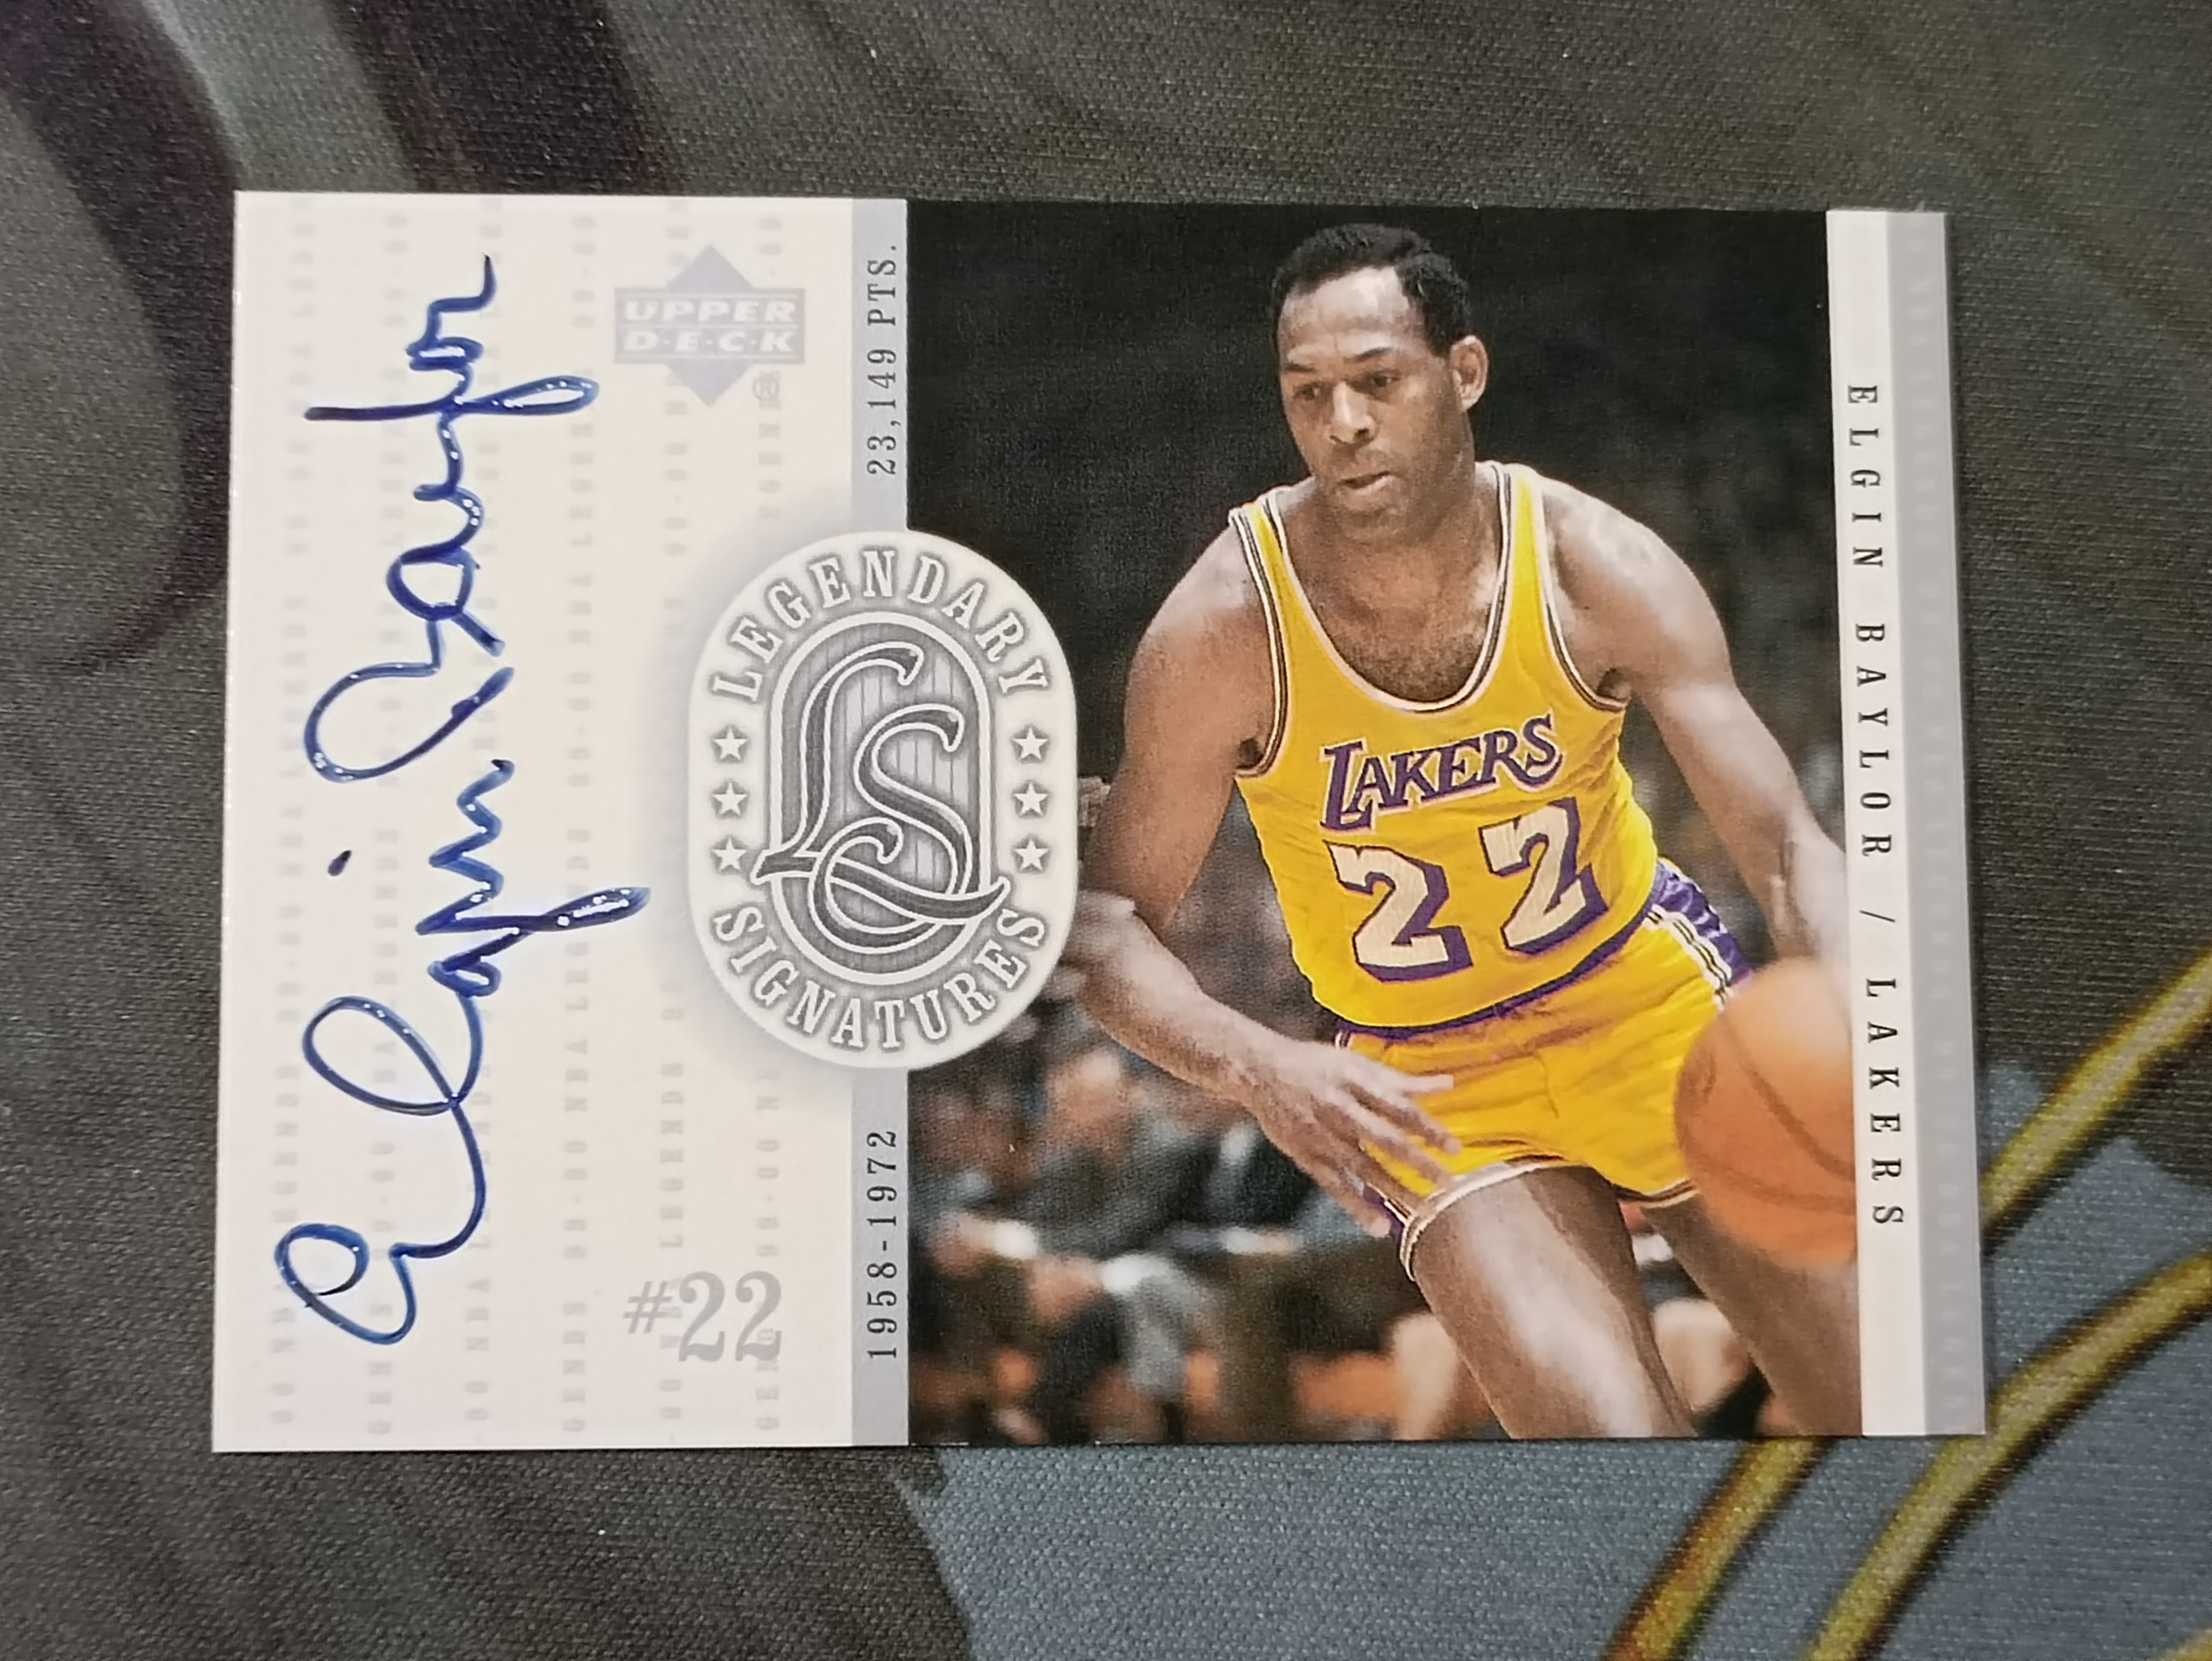 1999-00 Upper Deck NBA Legends Elgin Baylor 元年传奇系列 埃尔金贝勒 亲笔签名签字 卡签 湖人 记录总得分(品墨见大图小瑕)《苏州卡通》【ZZJ】